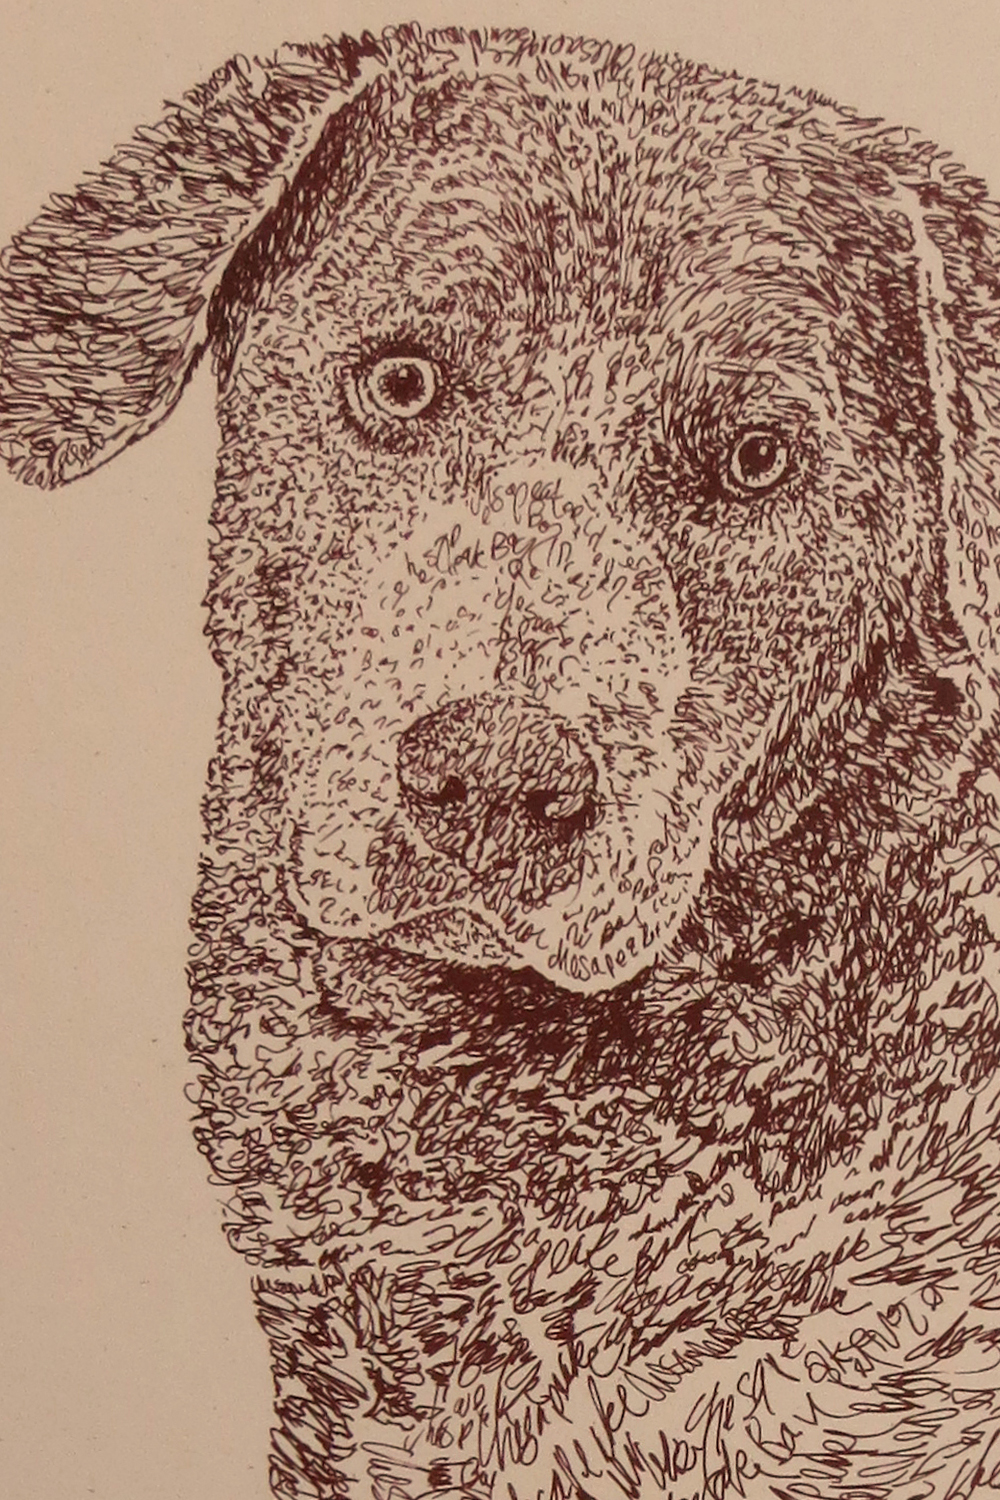 Chesapeake Bay Retriever: Dog Portrait by Stephen Kline : DrawDOGS by ...